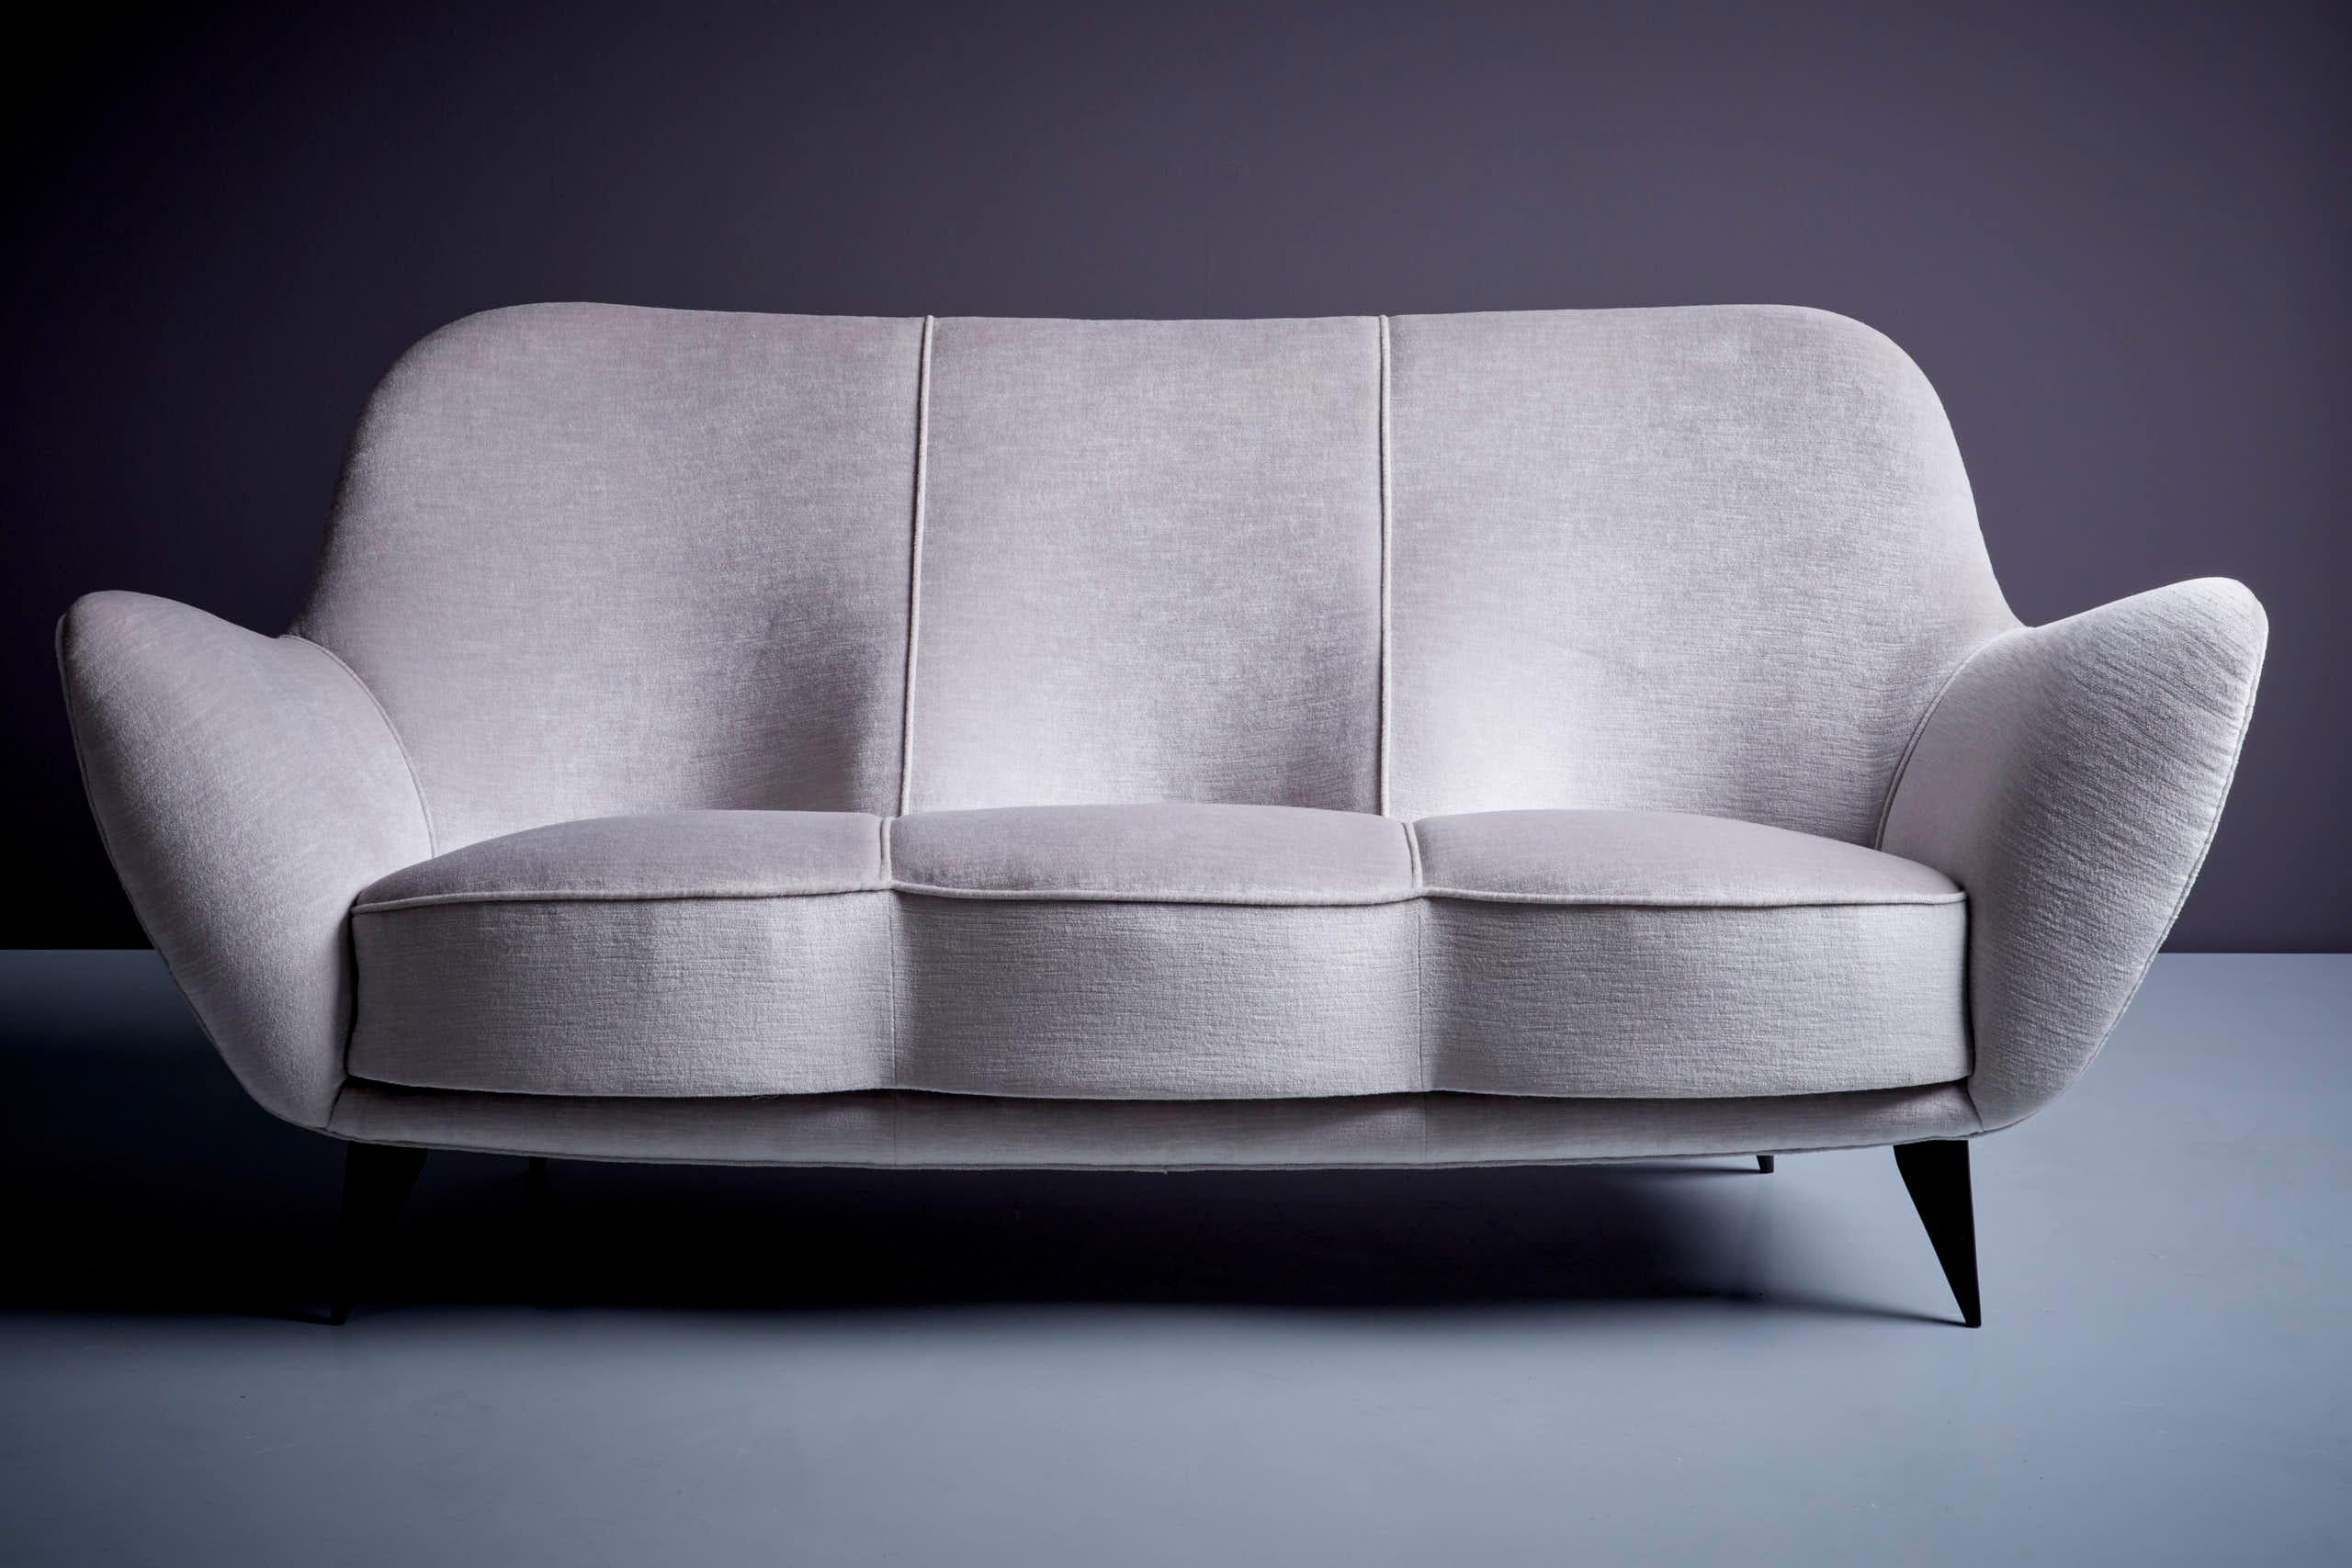 Fabric Guglielmo Veronesi for ISA Bergamo la perla Sofa and Lounge Chairs in Gray